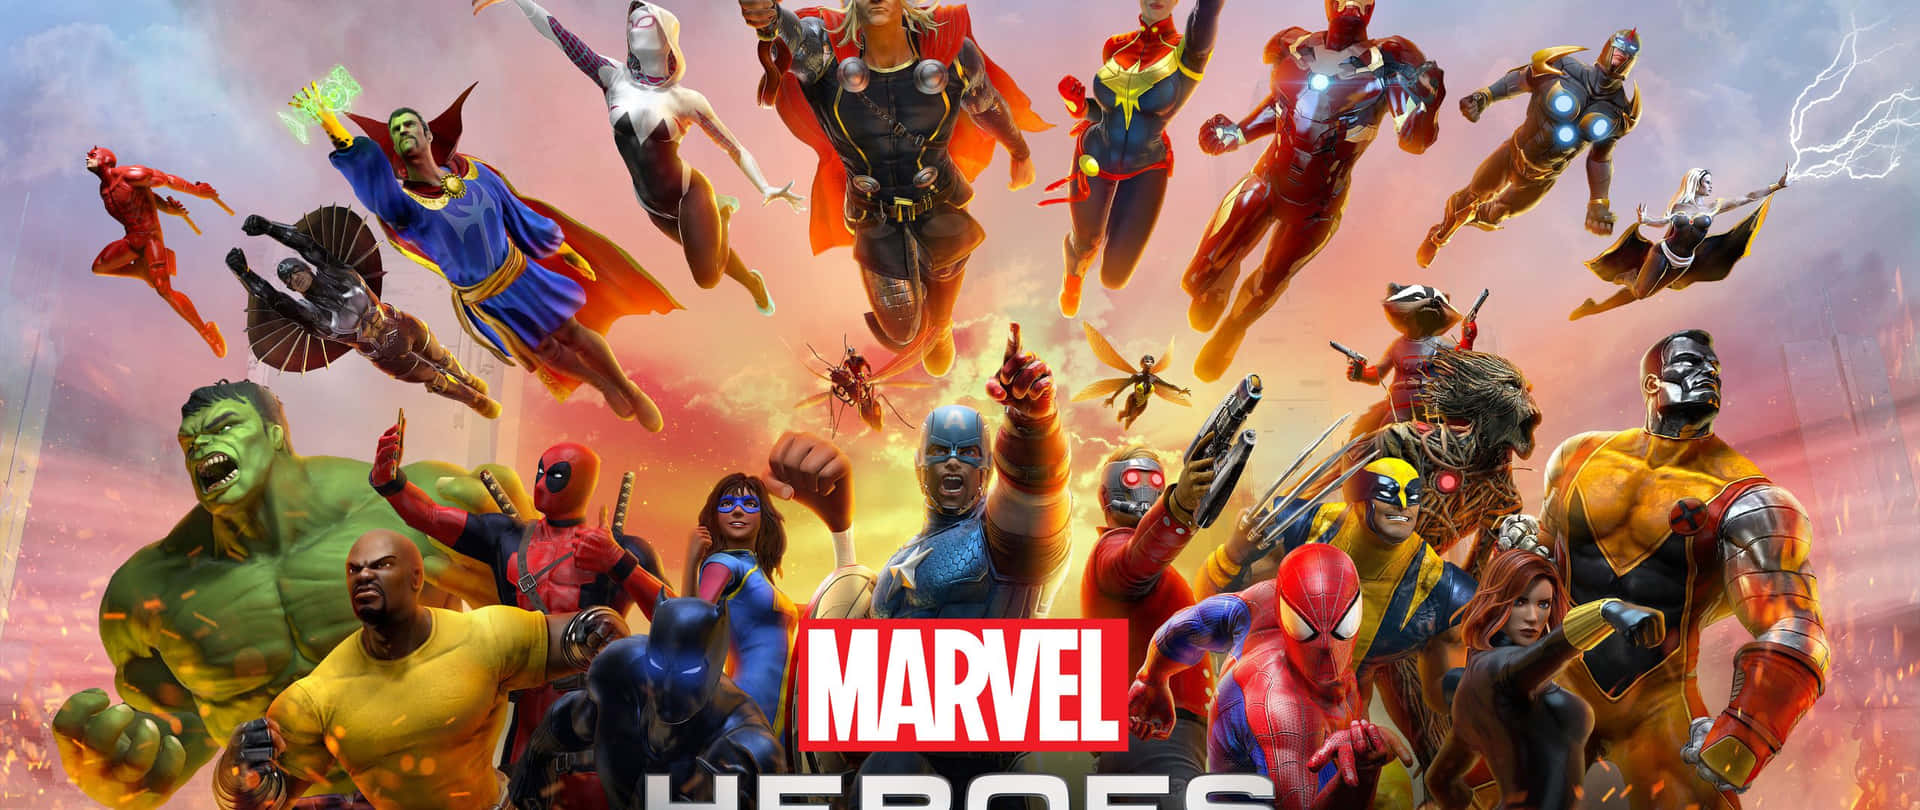 Collezionemarvel Super Heroes In Formato 2560 X 1080 Sfondo